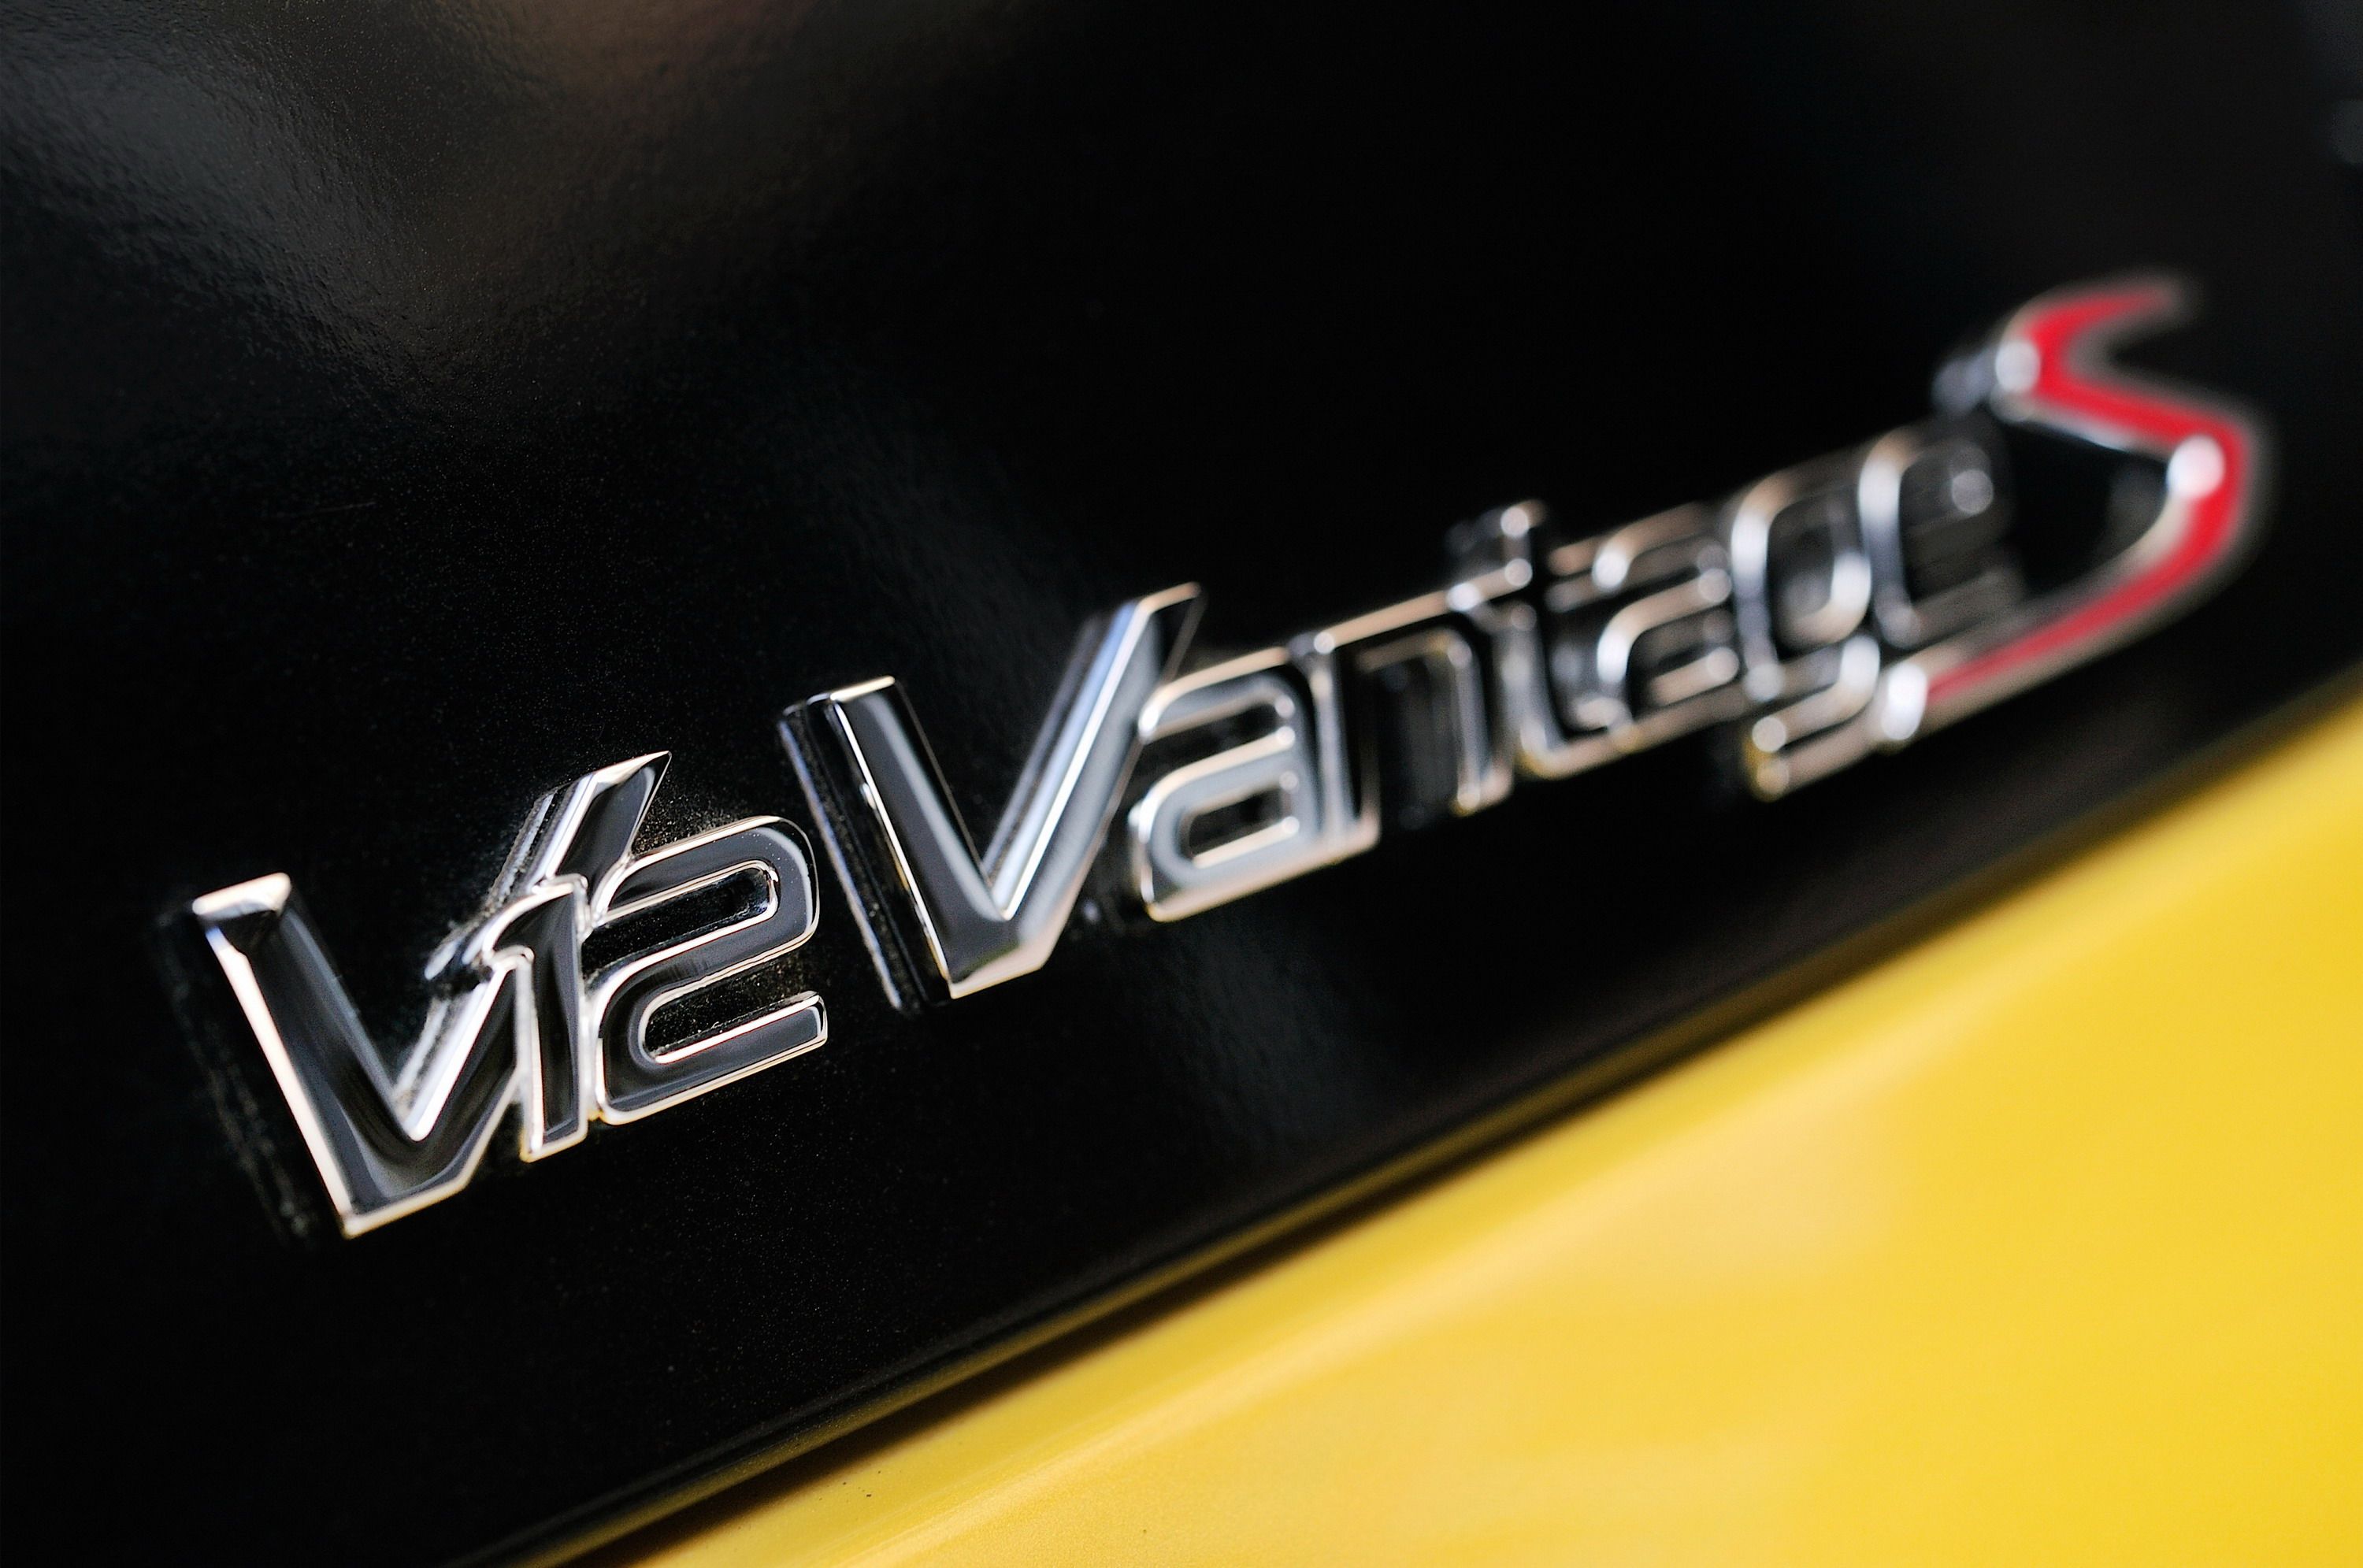 2014 Aston Martin V12 Vantage S